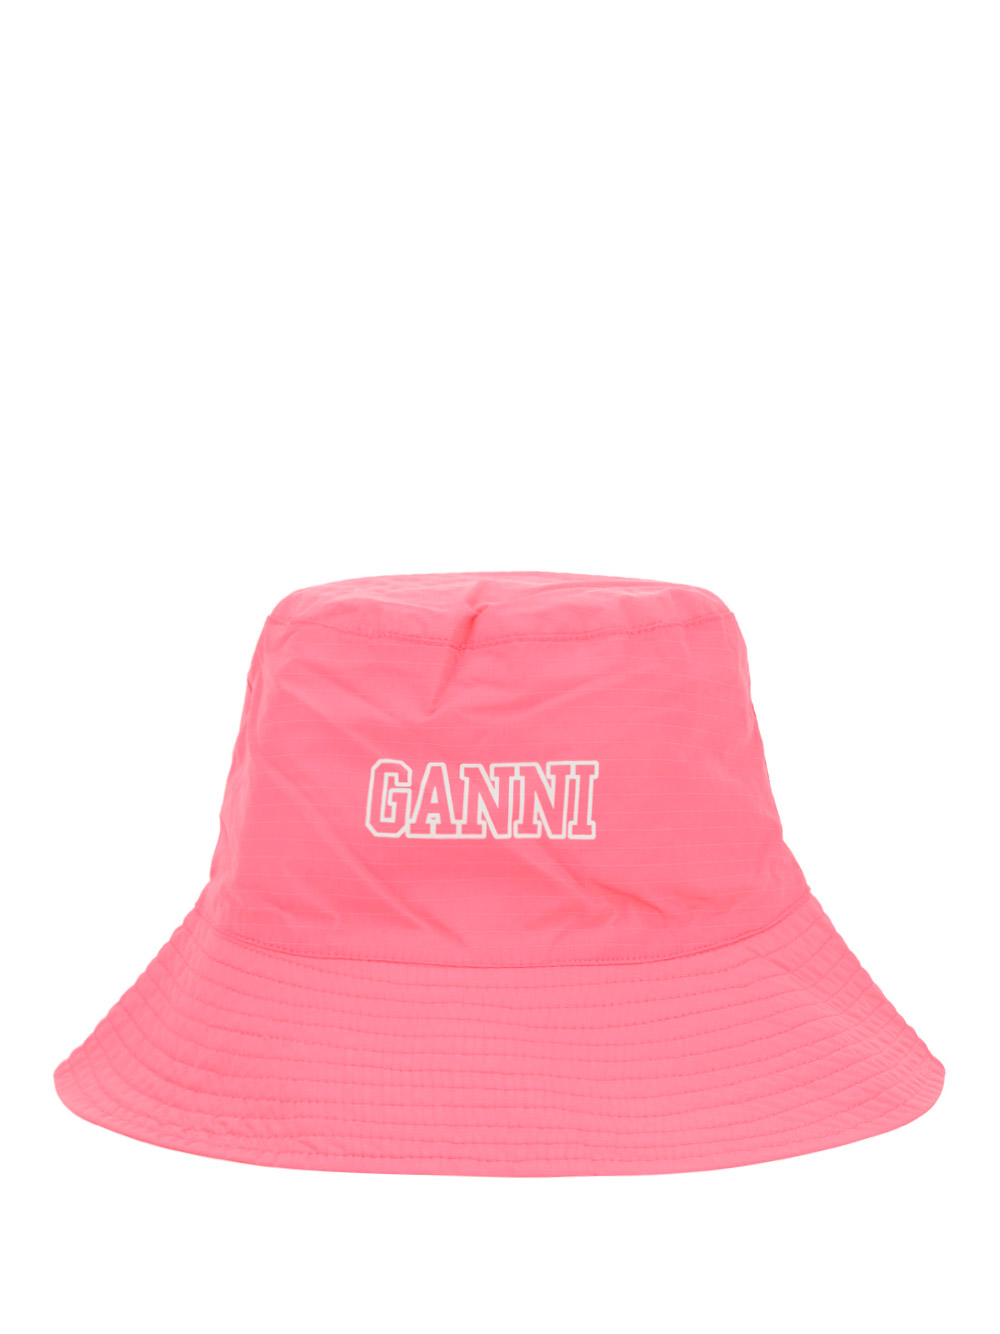 GANNI BUCKET HAT,A4601_393